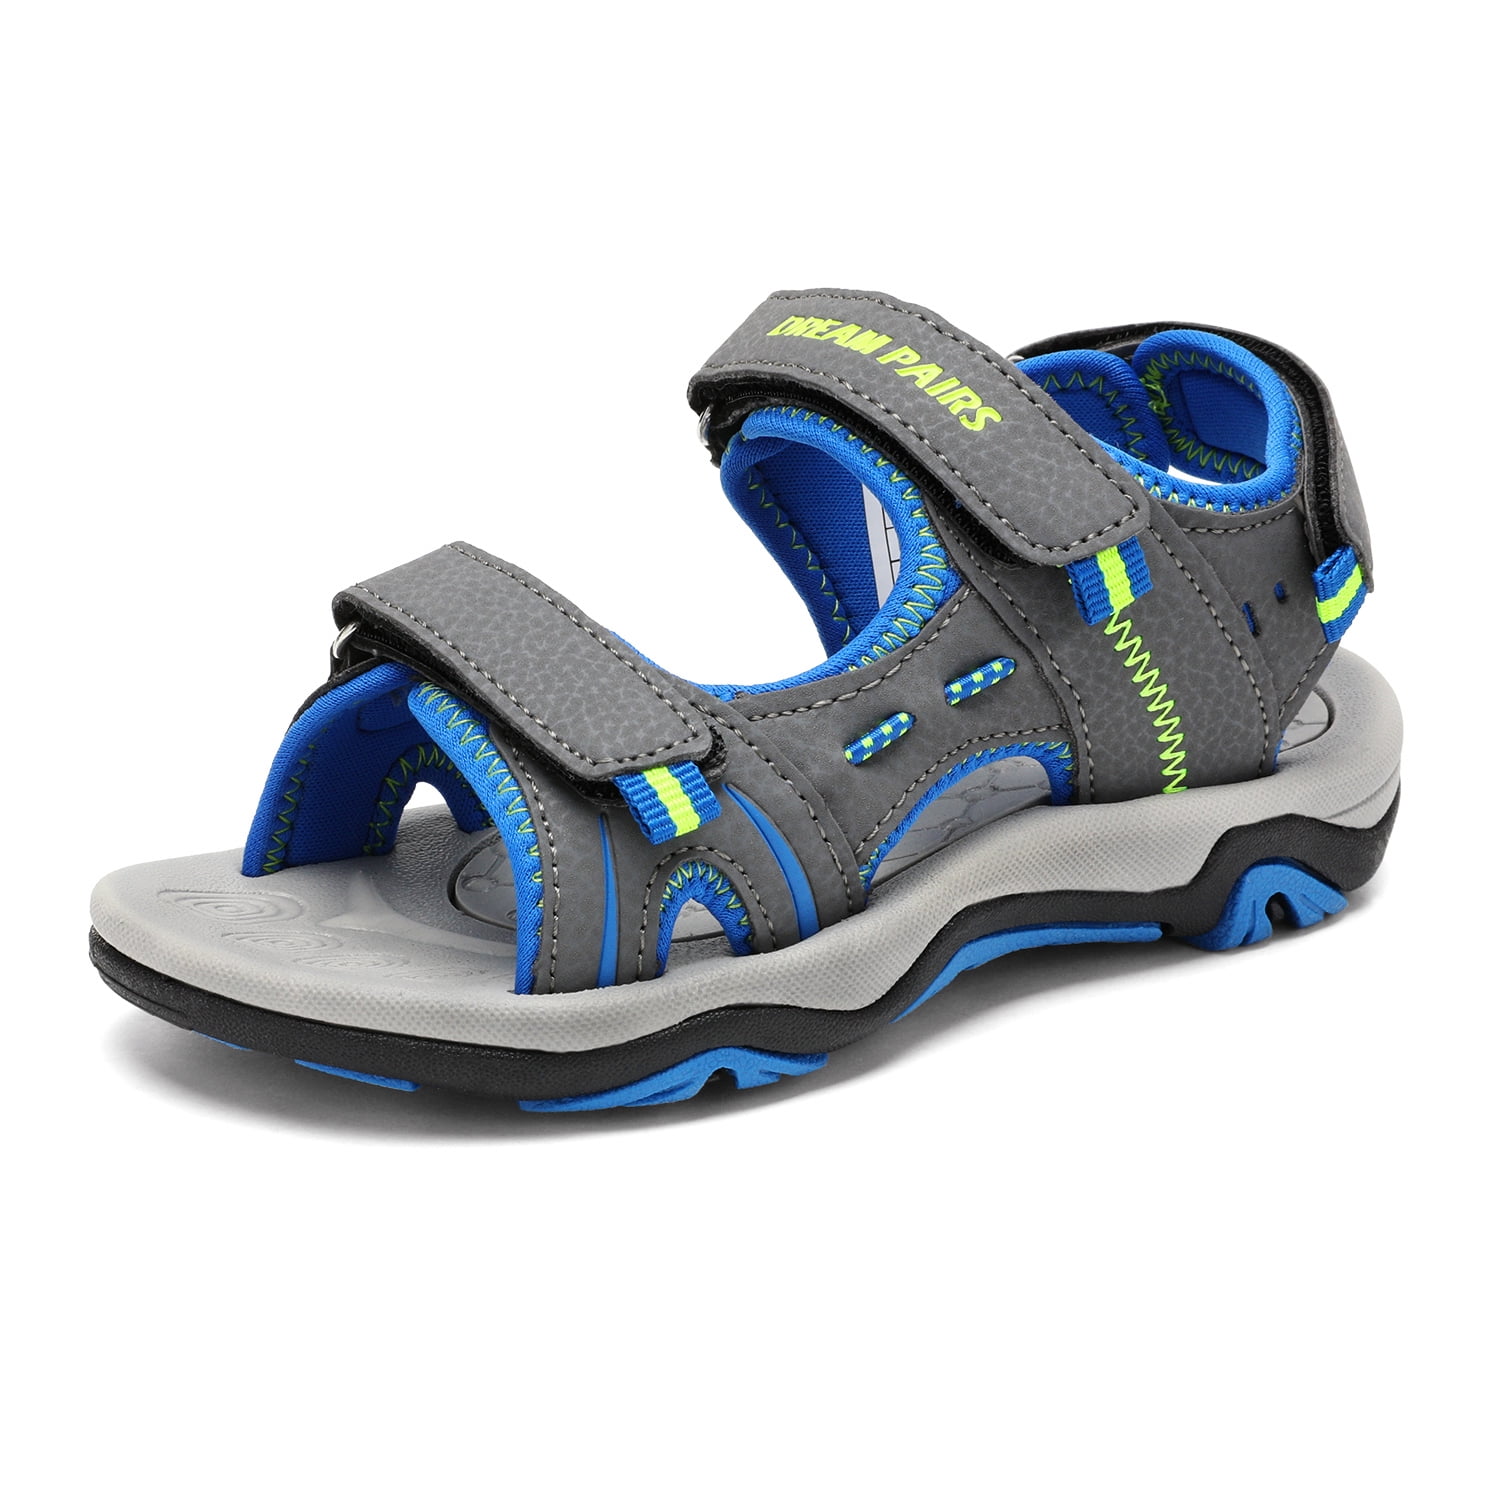 Buy Dark Grey Sandals for Men by AIRFAX Online | Ajio.com